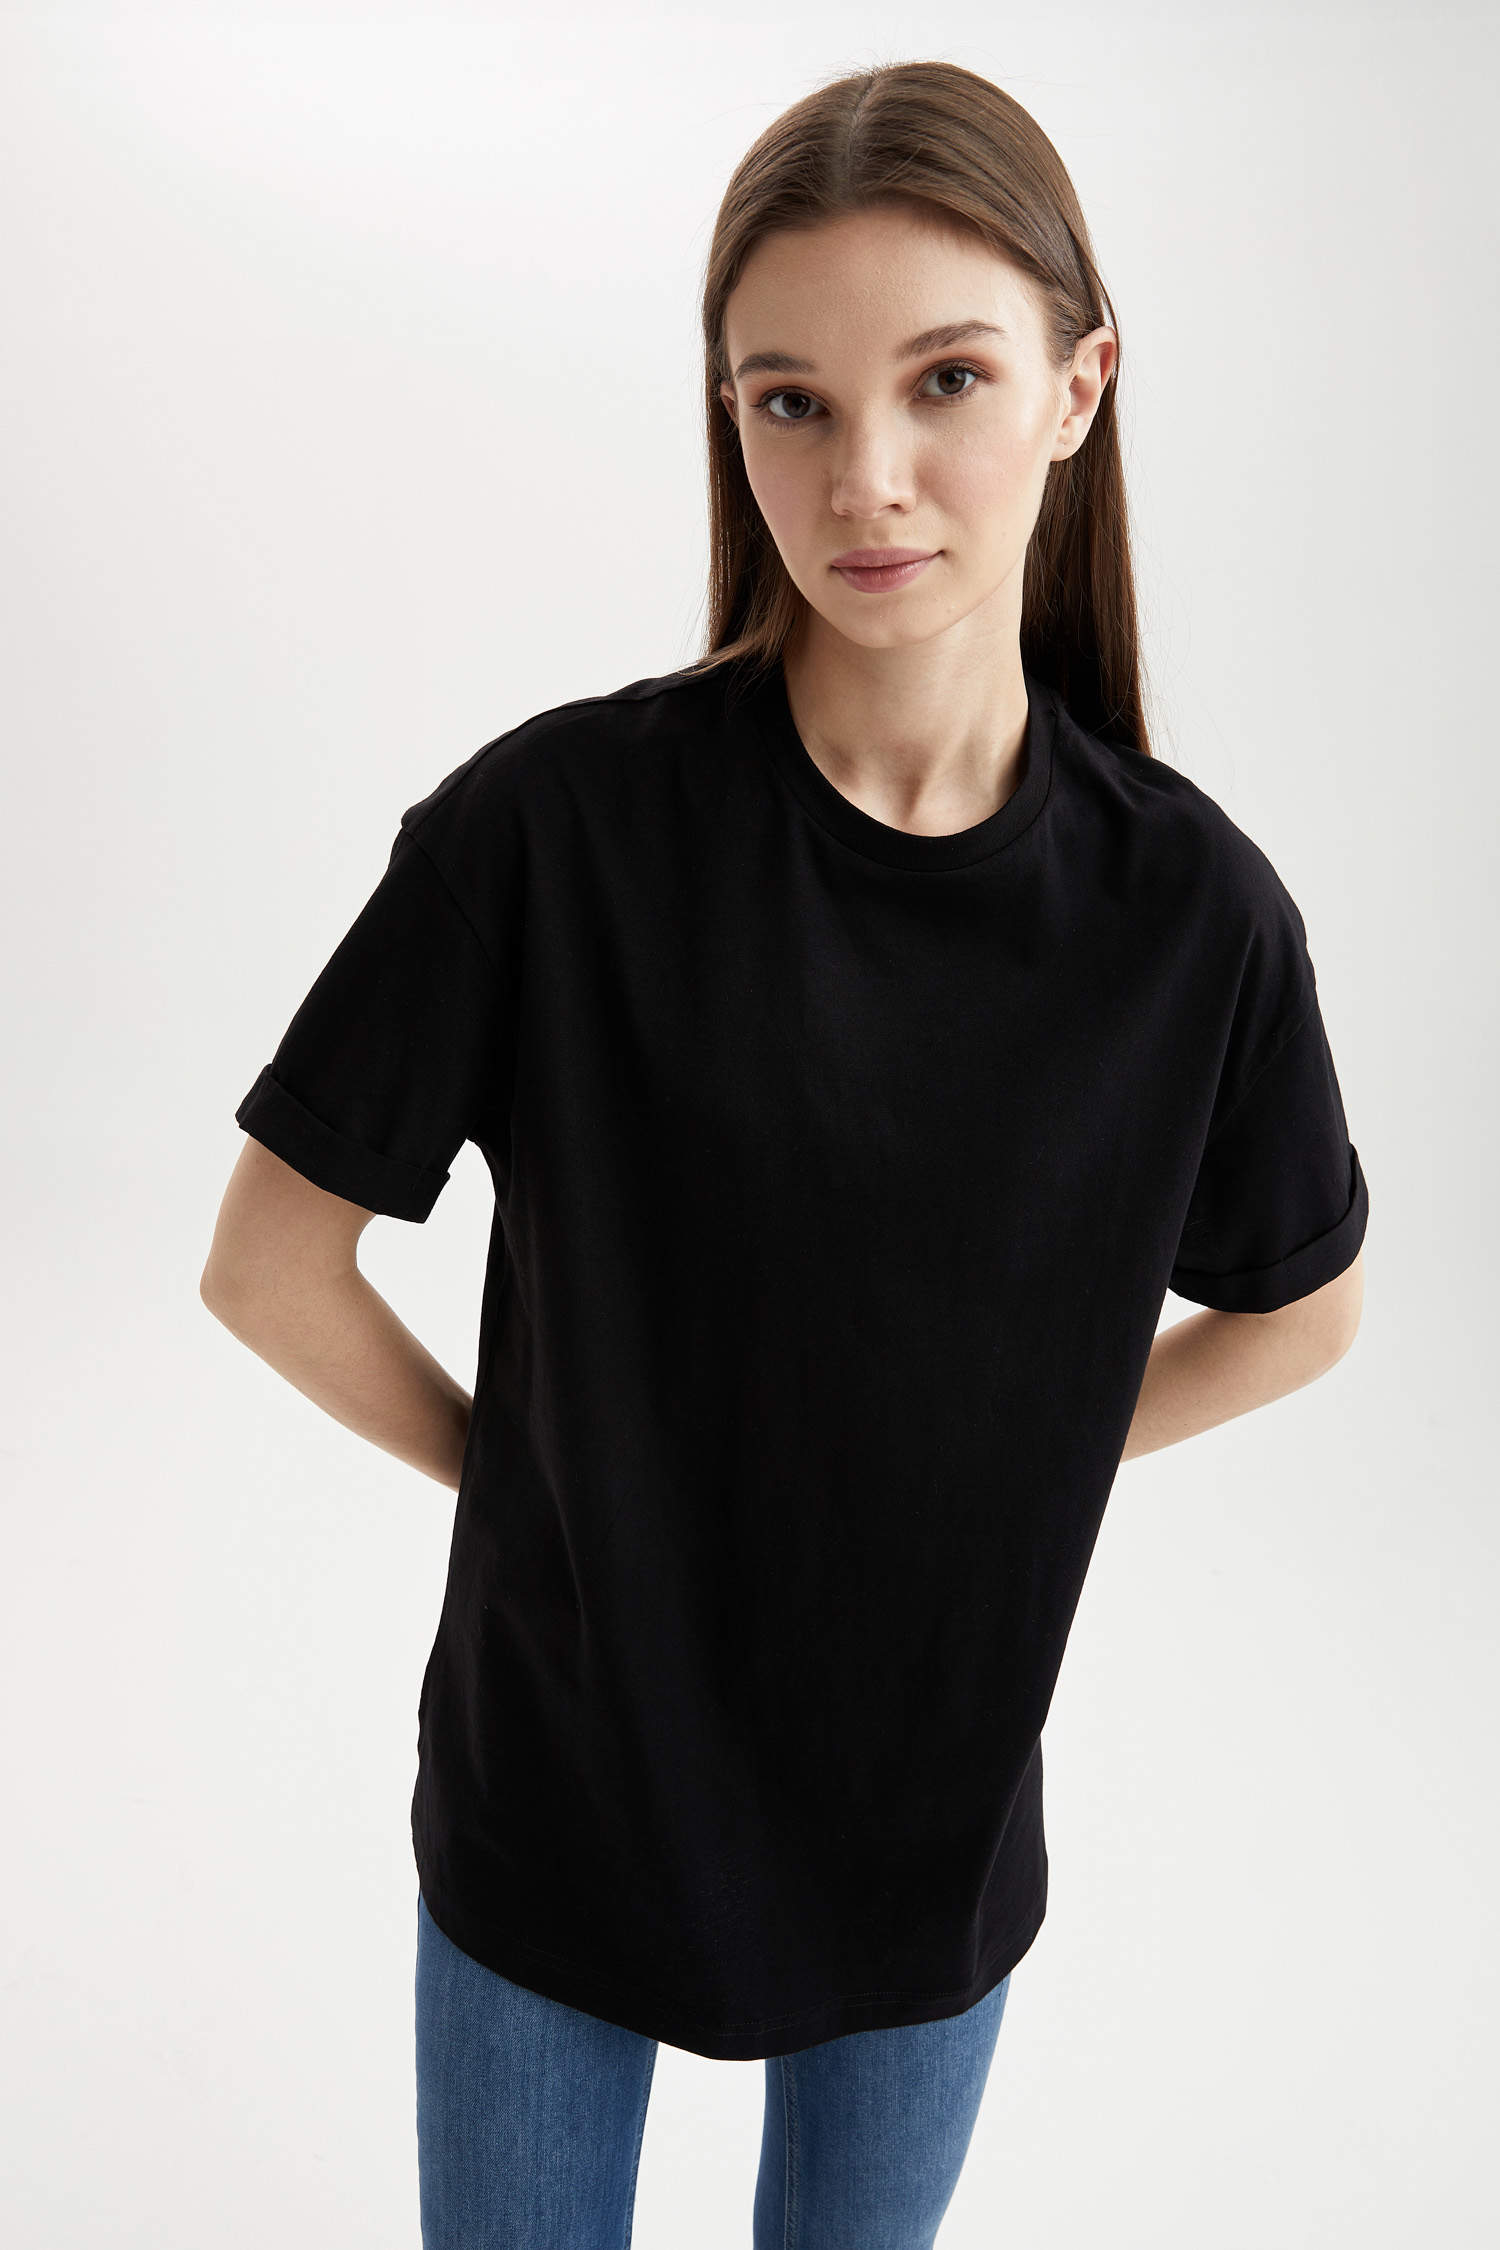 Haut noir Femmes Vêtements Hauts & t-shirts Blouses manches courtes Romatic Blouses manches courtes 